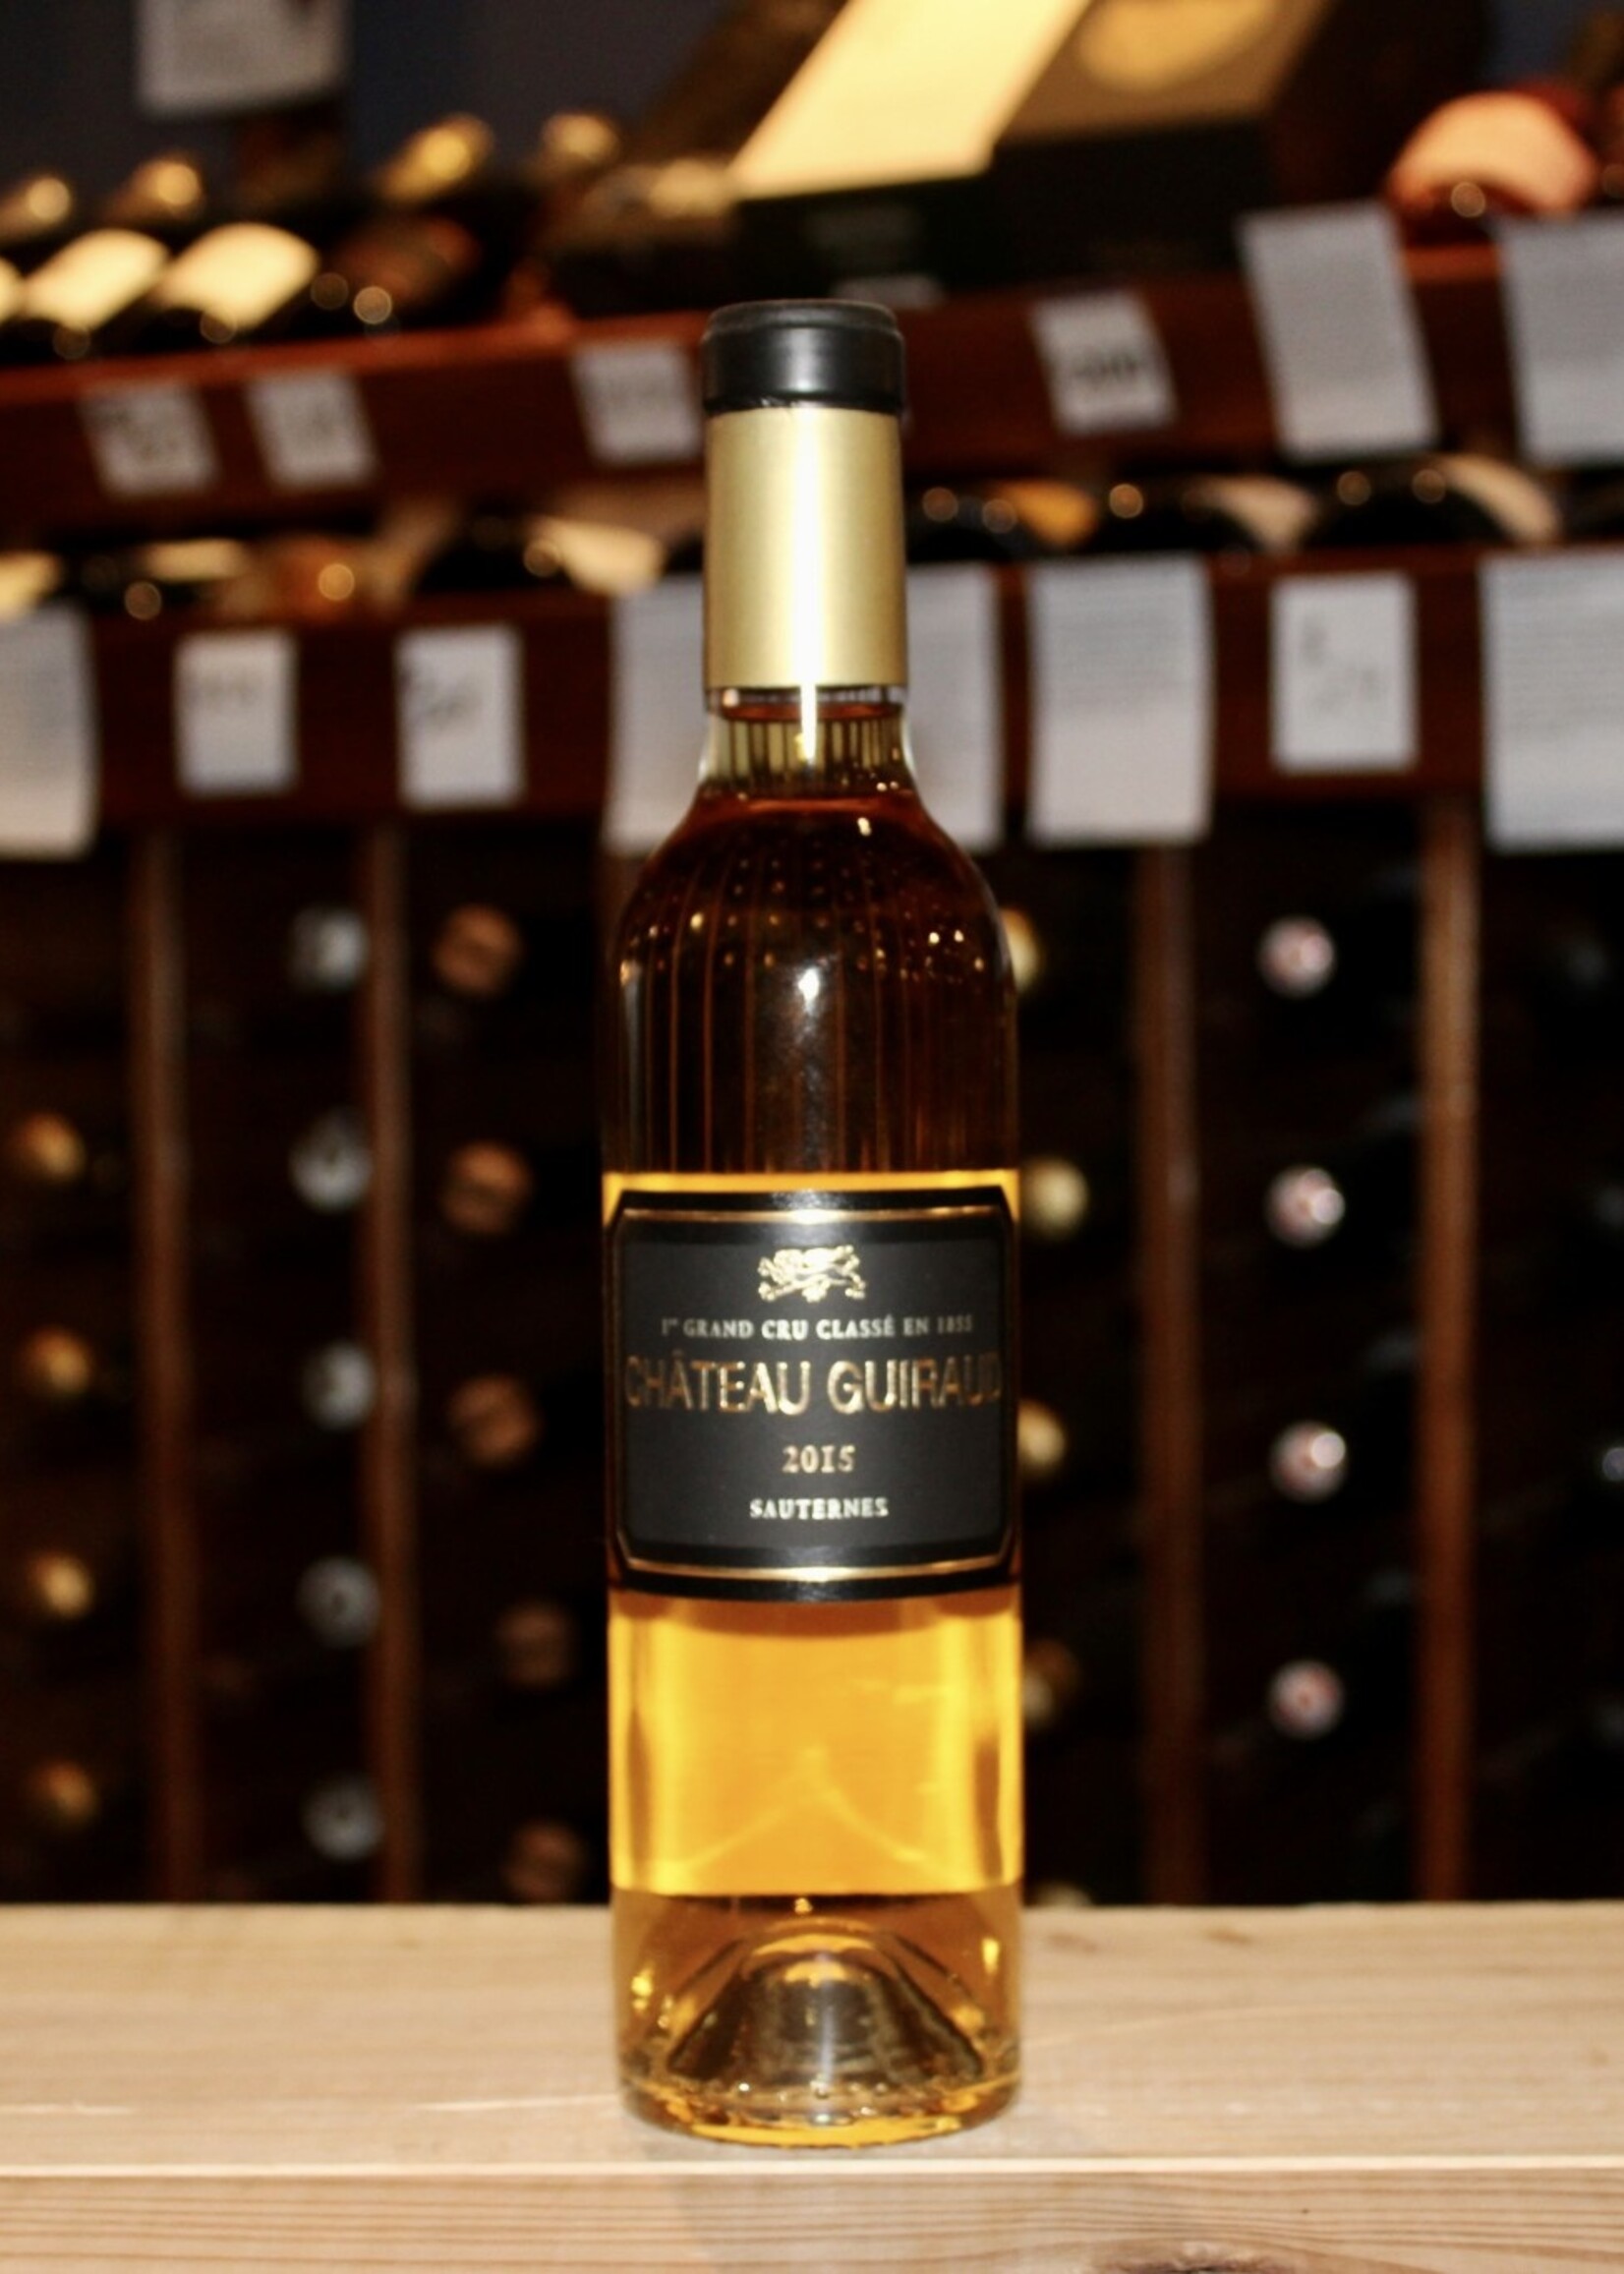 Wine 2015 Chateau Guiraud 1er Grand Cru Classe - Sauternes, France (375ml)